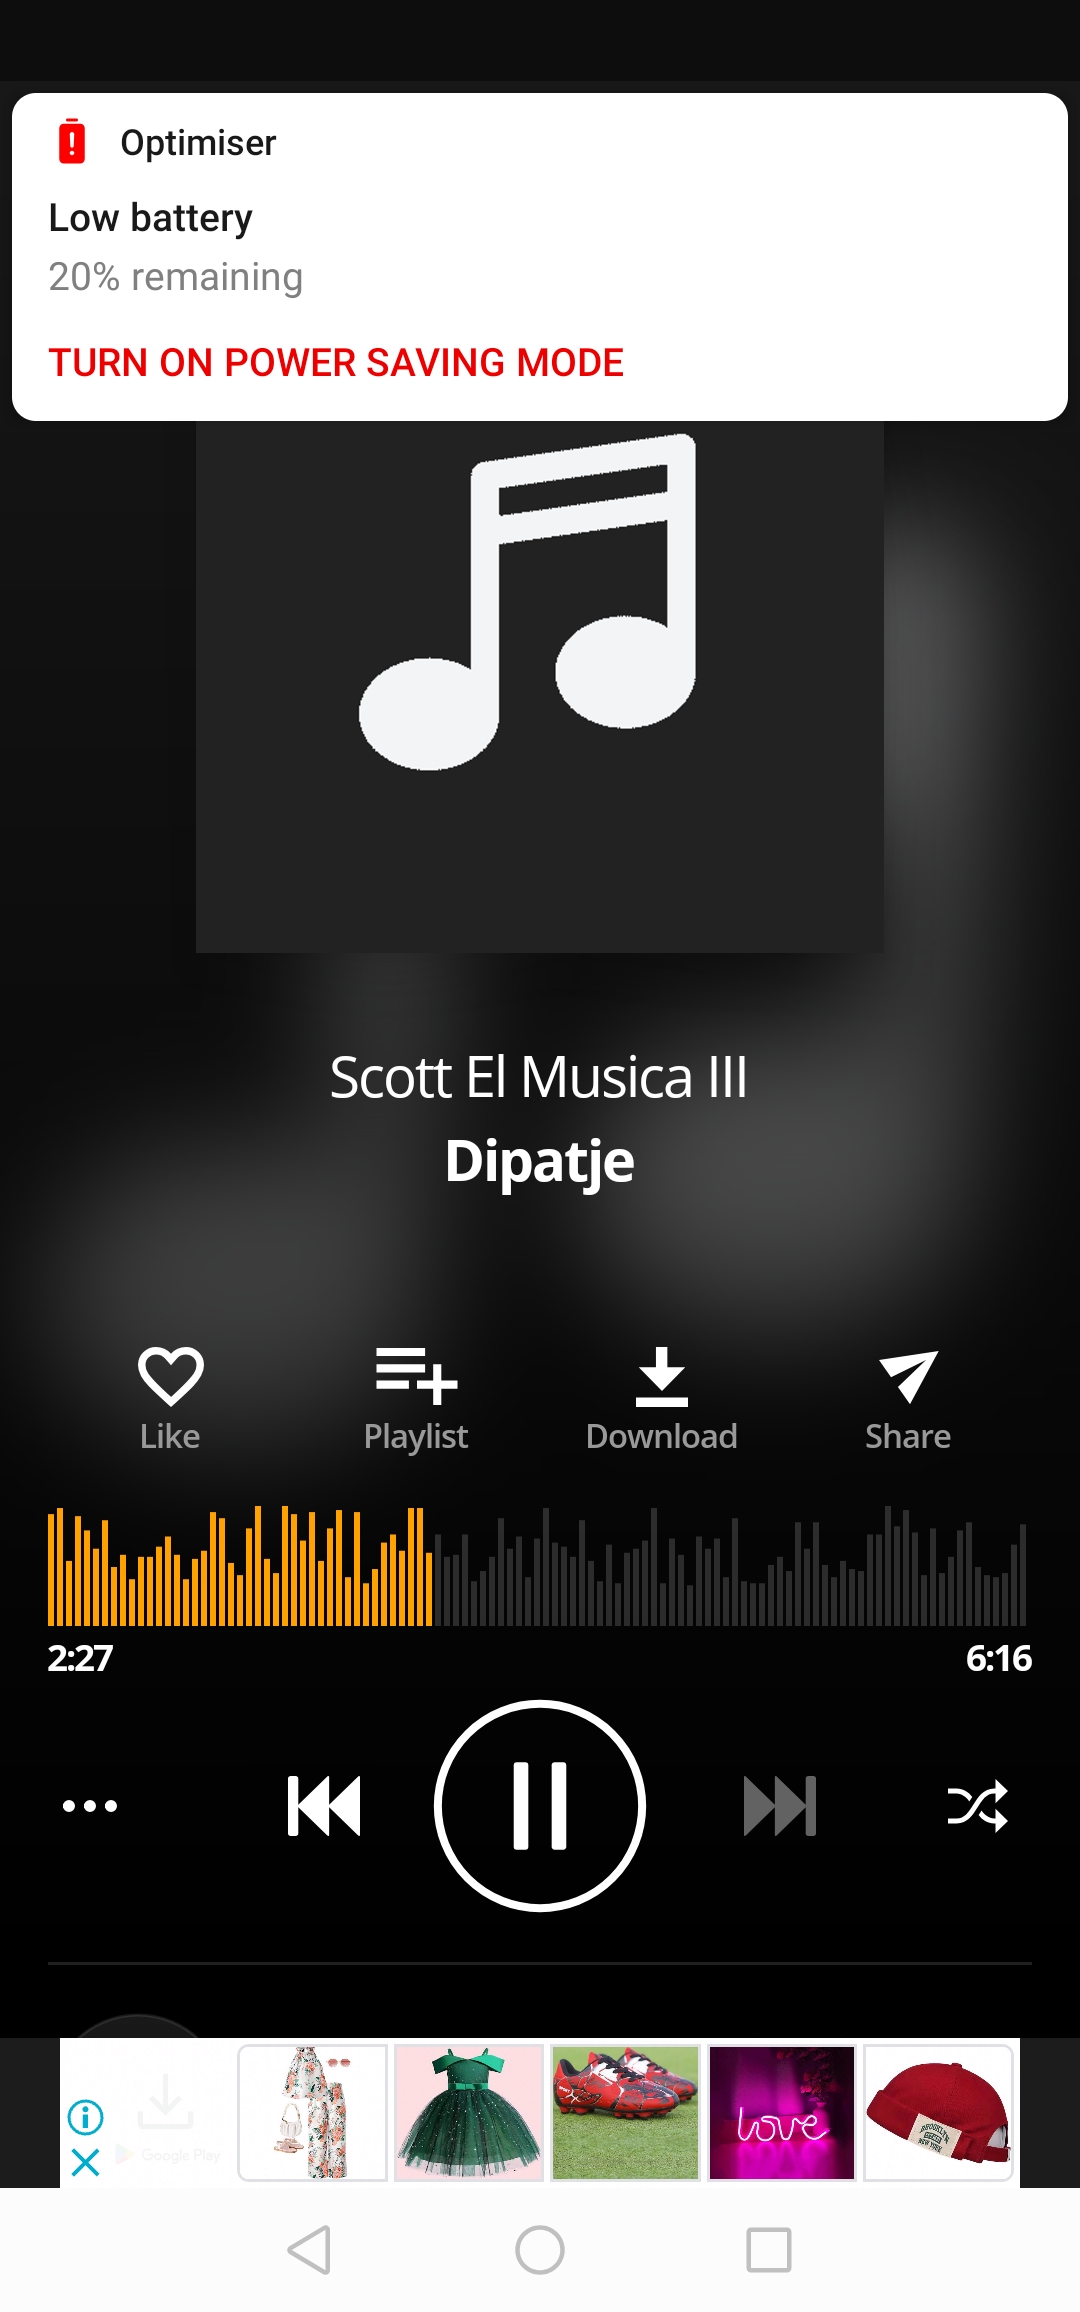 Dipatje - Scott El Musica III